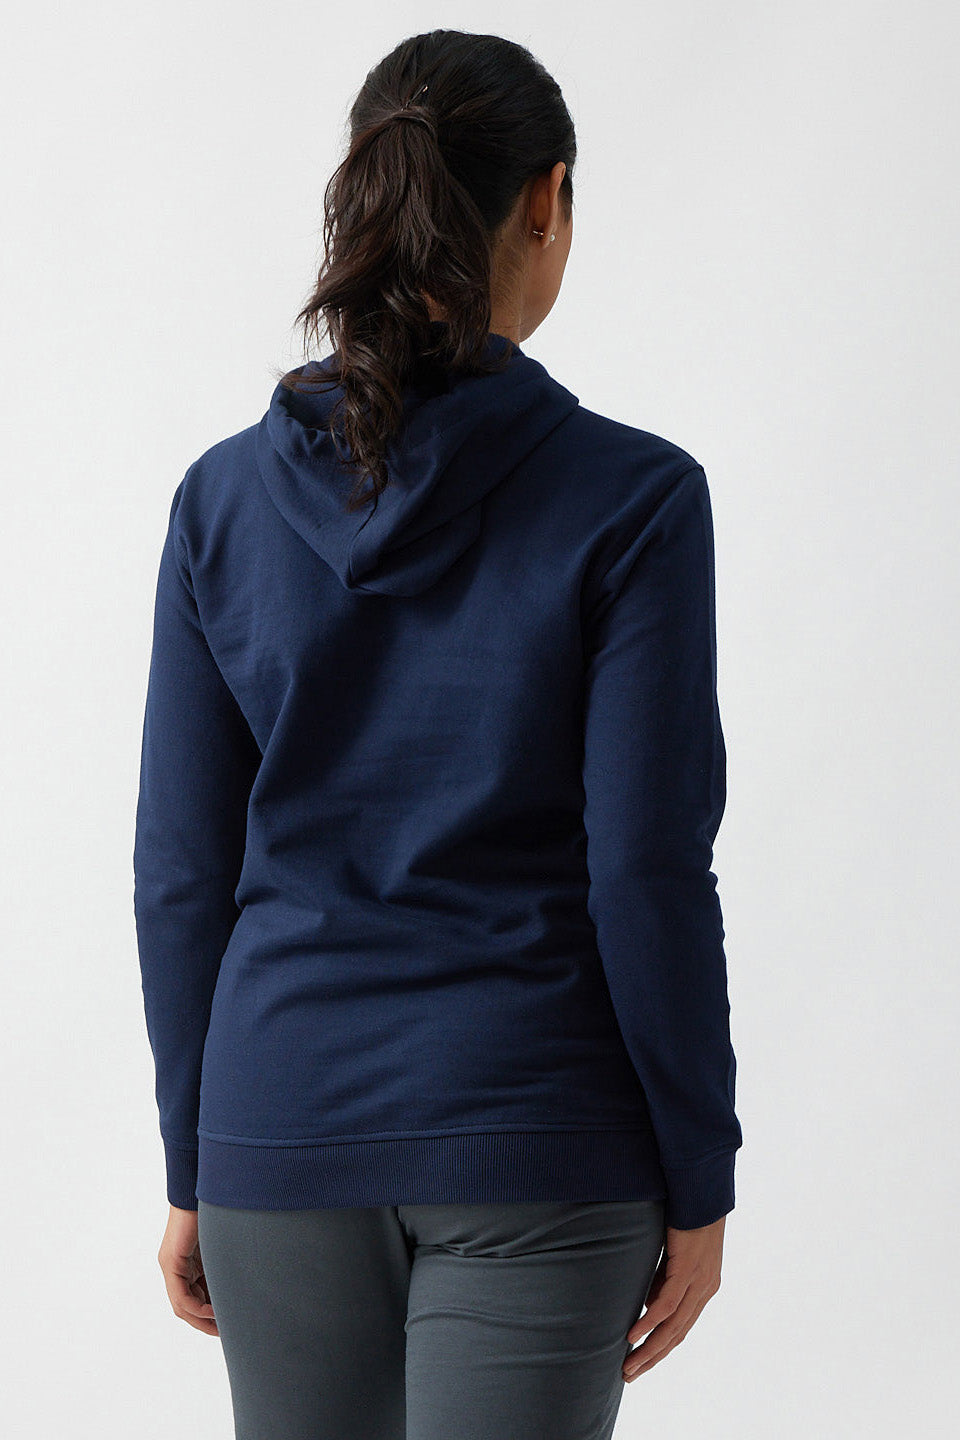 Womens Hoodies & Sweatshirts | The Brushed Terry Hoodie Deep Sea Blue